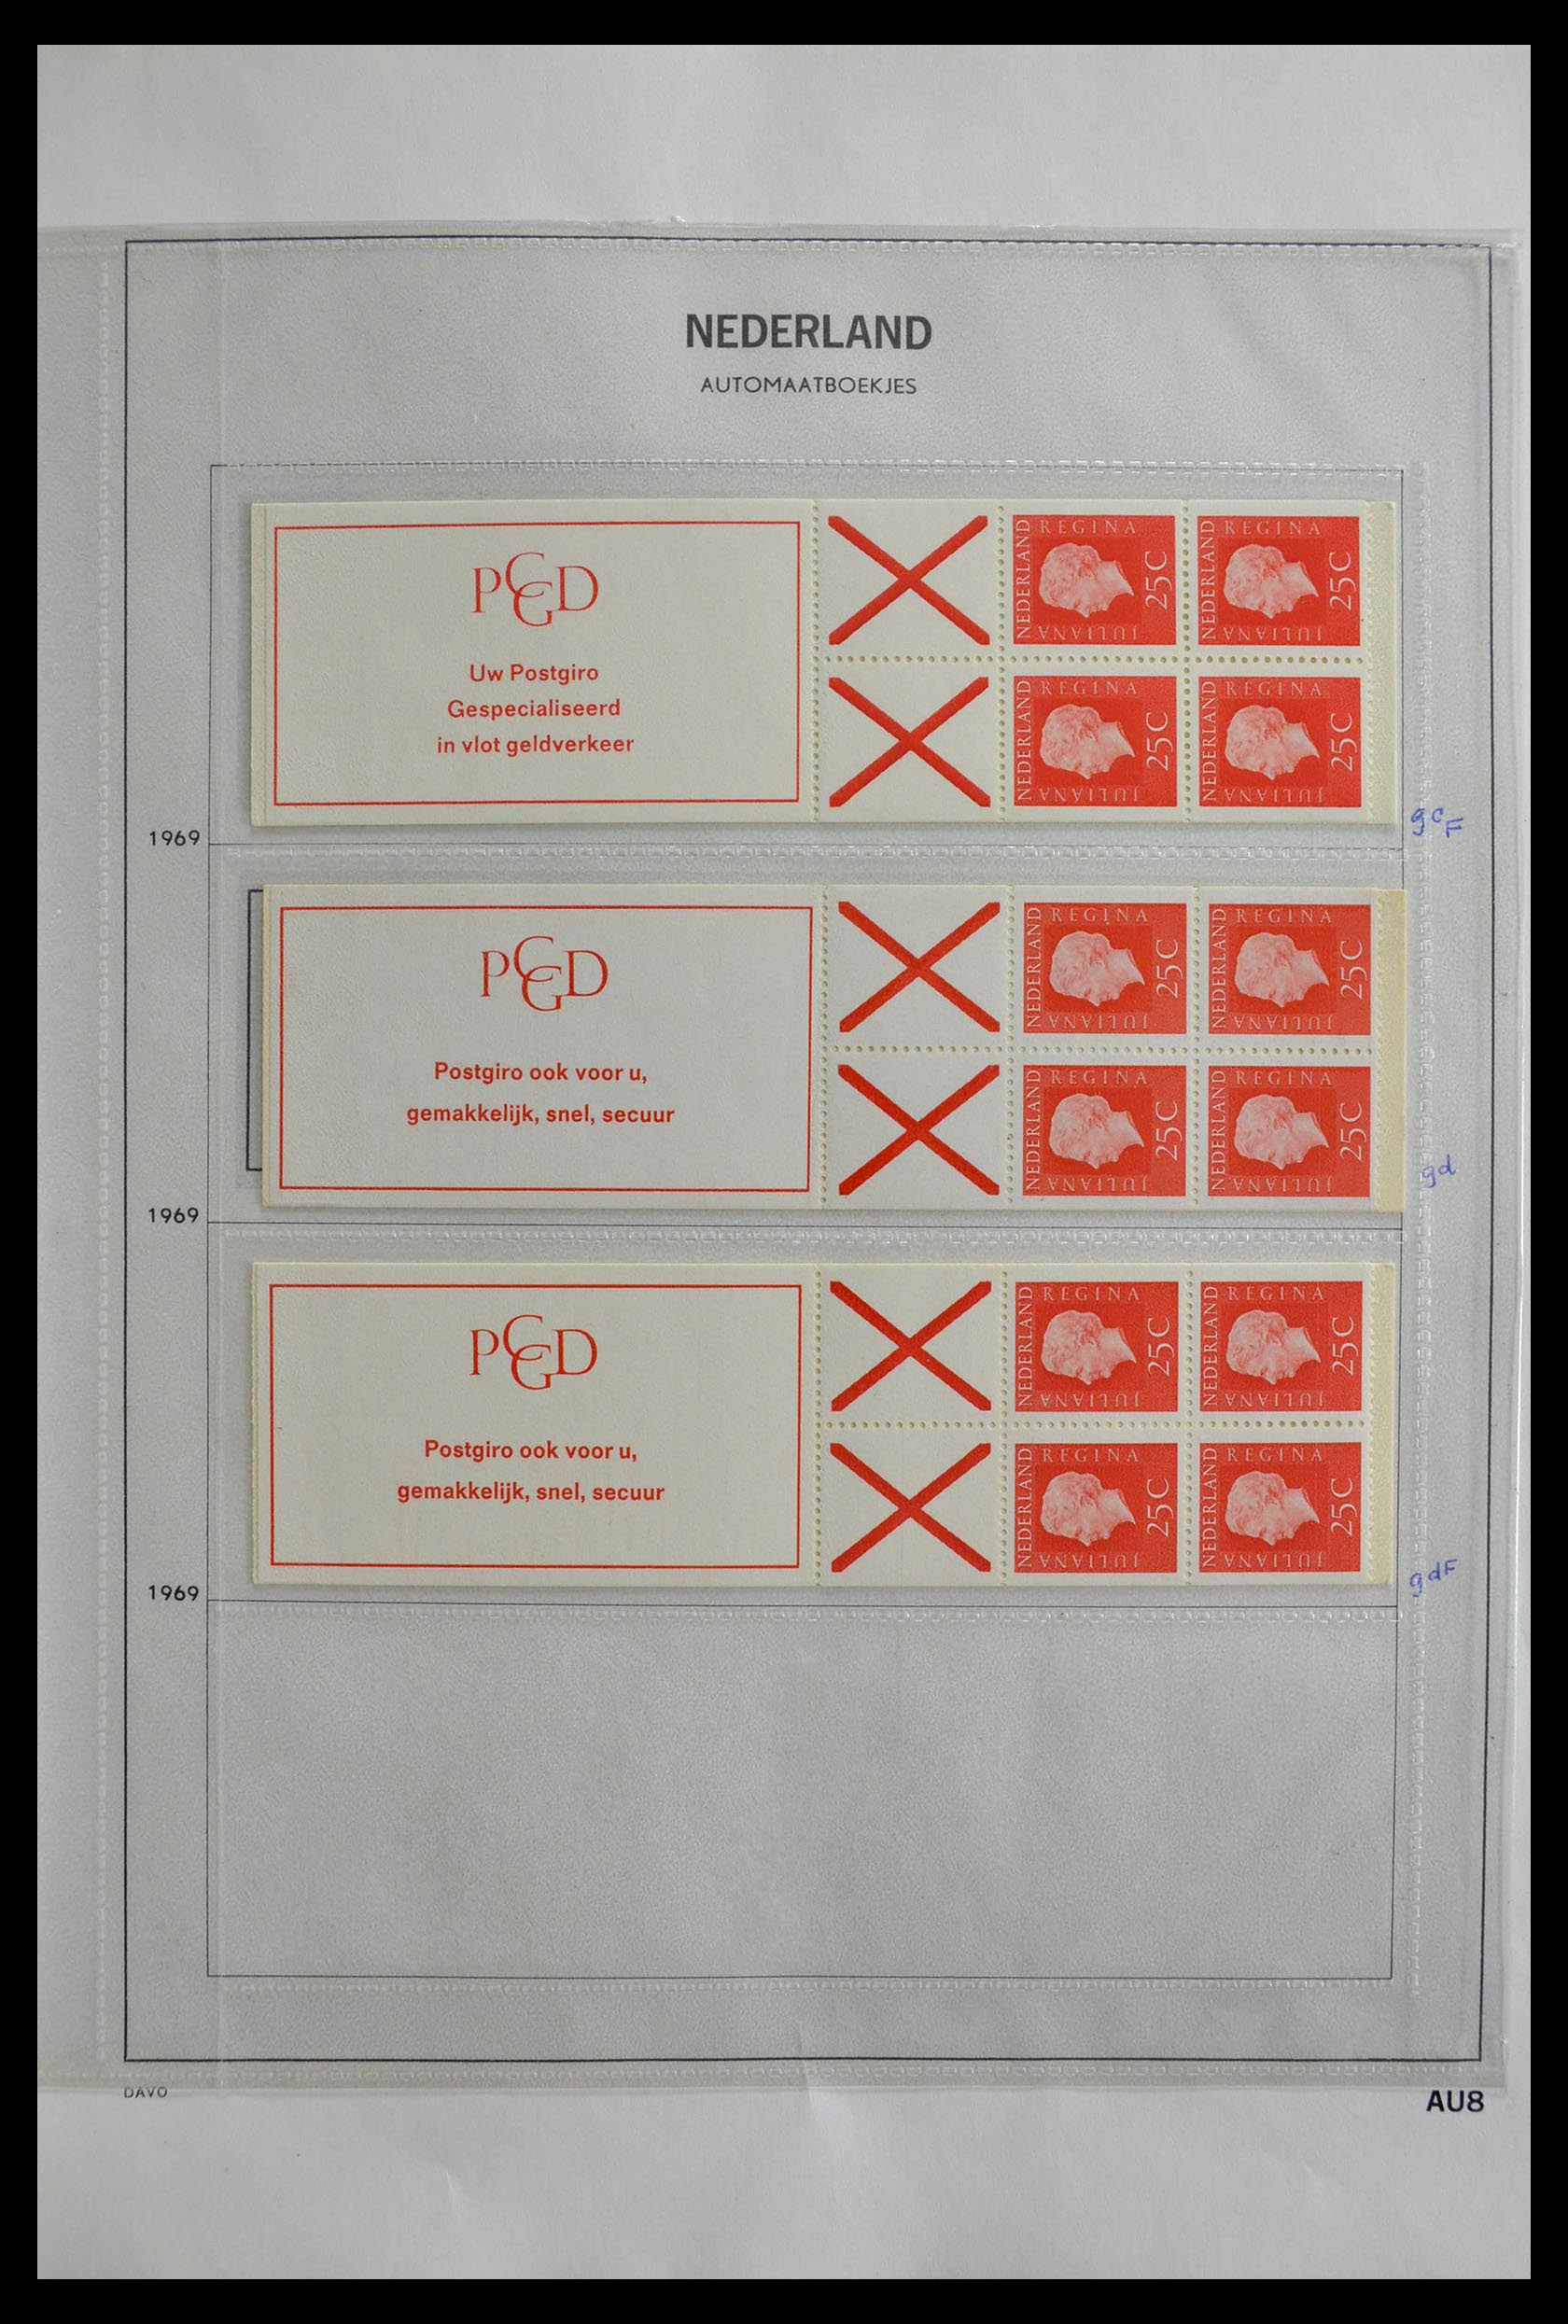 28853 008 - 28853 Netherlands stampbooklets 1964-2005.